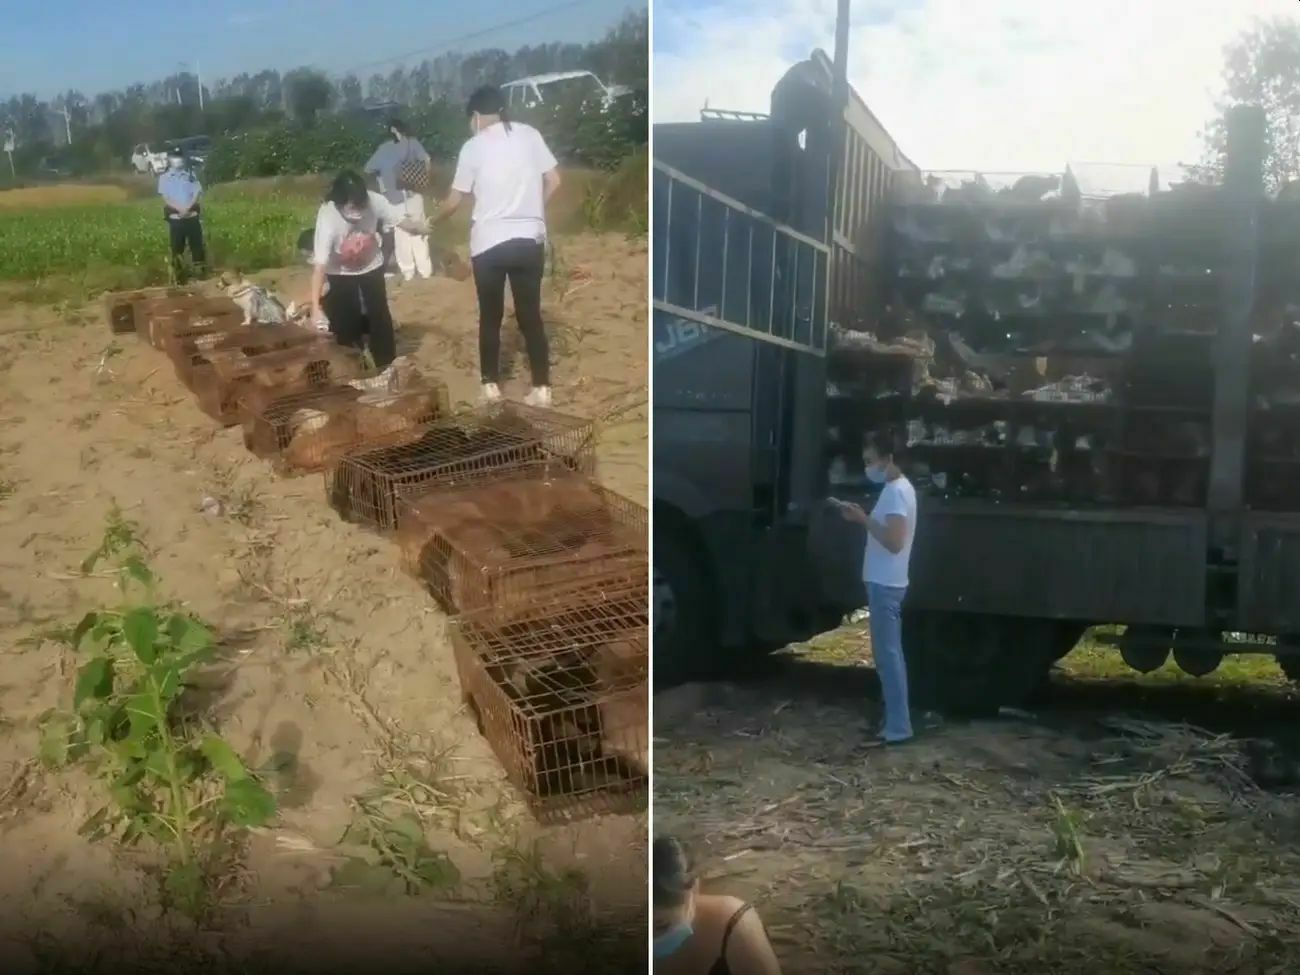 В Китае остановили «грузовик смерти» с 1400 собаками и кошками. 370 были мертвы